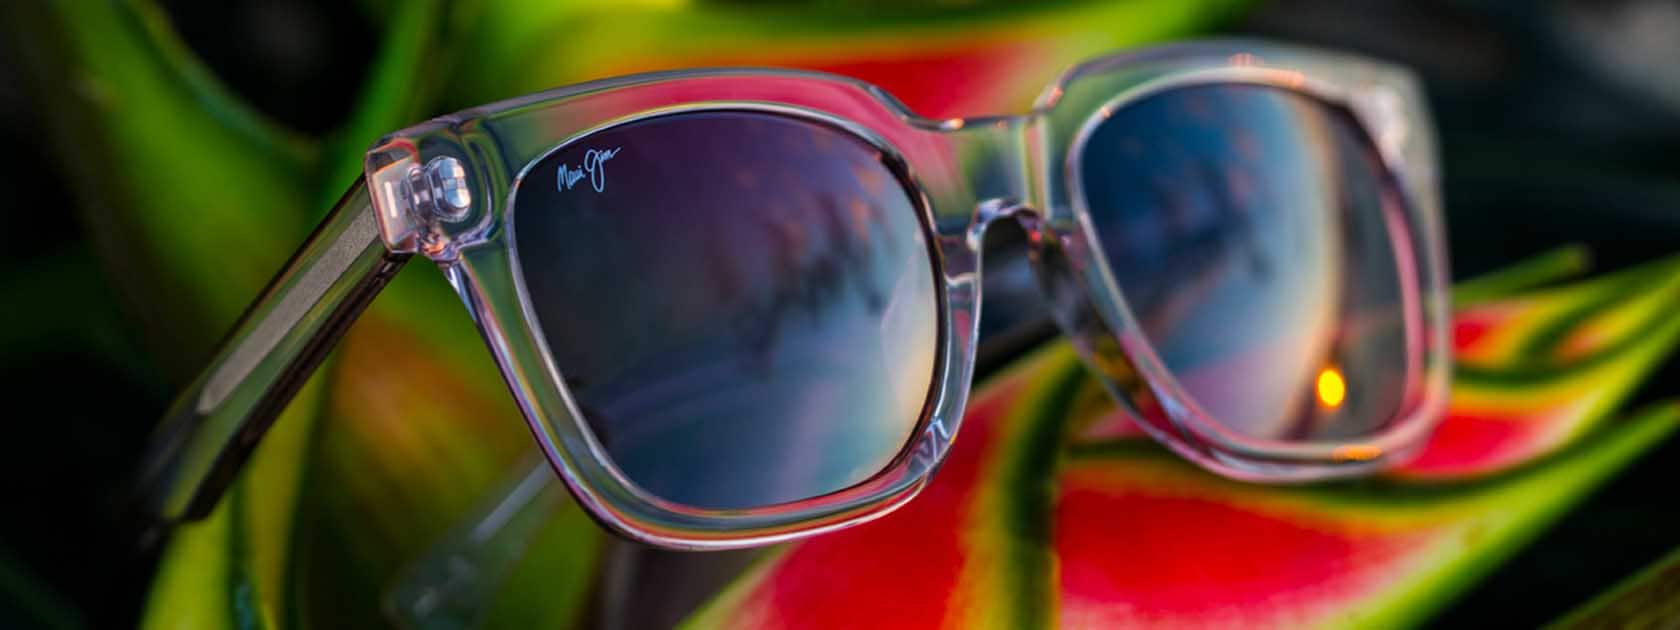 Sonnenbrille mit transparenter Fassung und roséfarbenen Gläsern auf roten und grünen Blättern